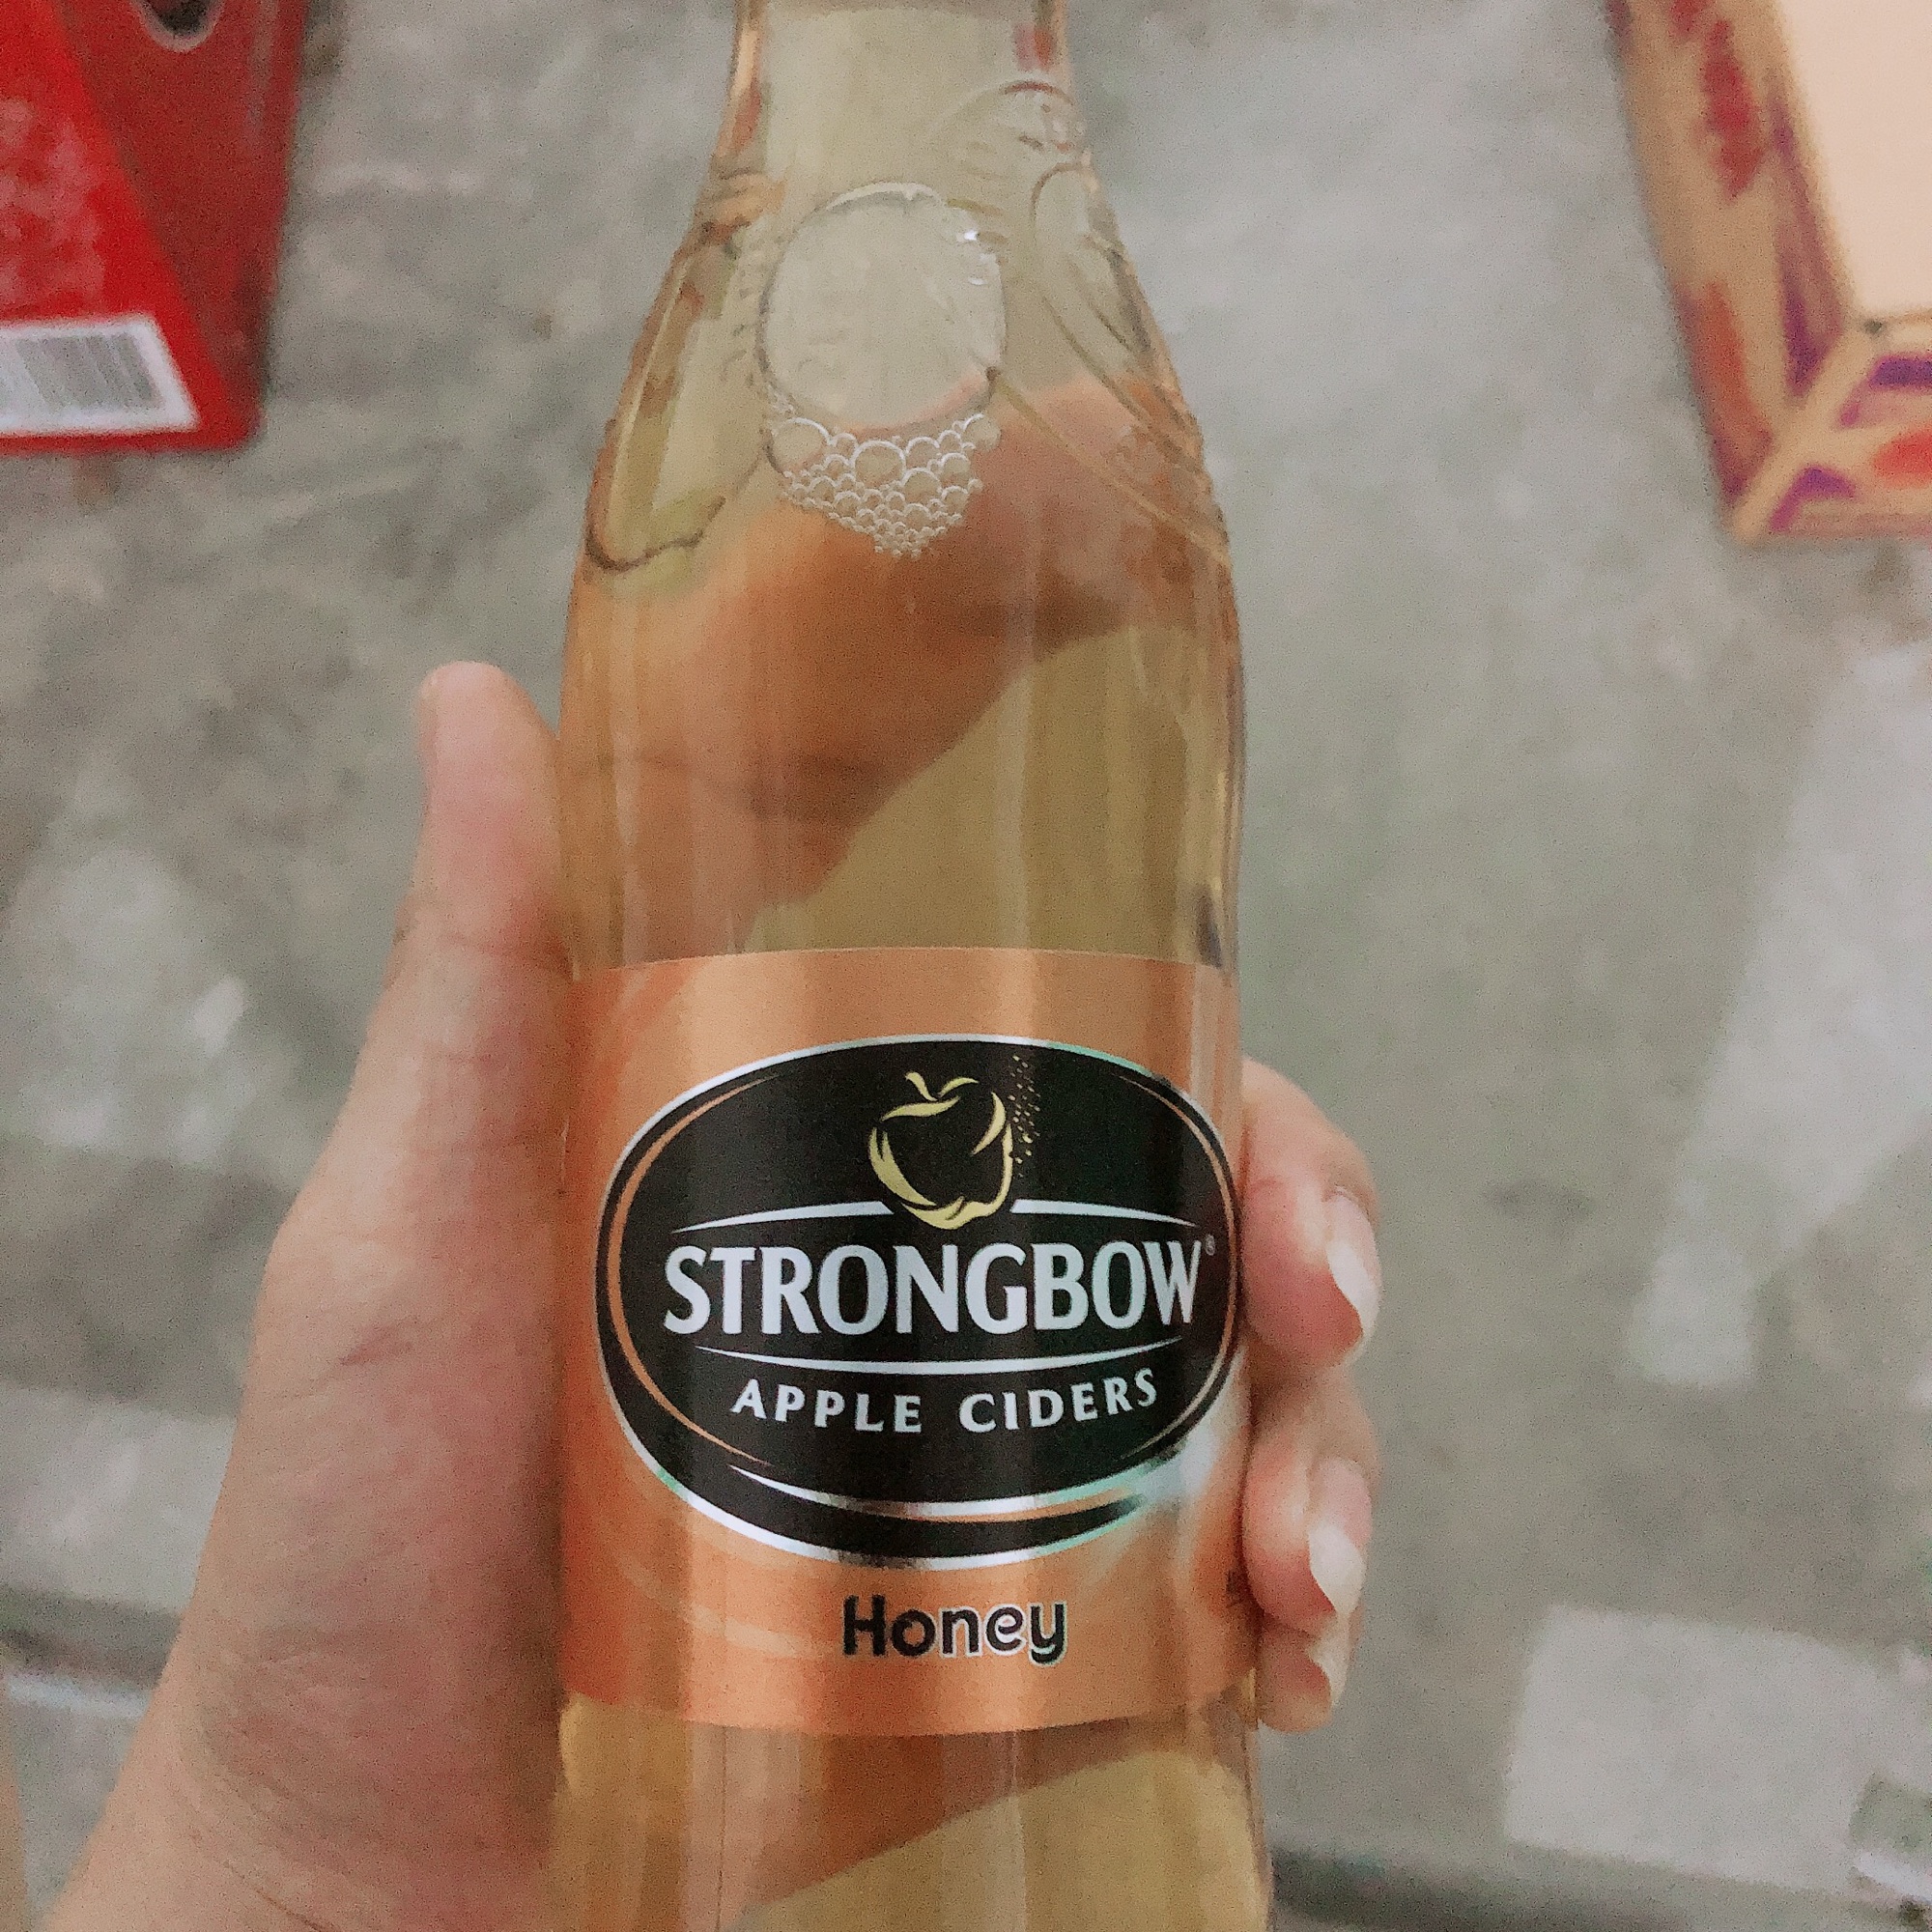 Strongbow: Hình ảnh về Strongbow, một thương hiệu nổi tiếng của bia táo với vị táo tự nhiên tươi ngon, sẽ khiến bạn muốn thử ngay. Chúng tôi mang đến cho bạn những hình ảnh tuyệt vời về Strongbow, giúp bạn có được một trải nghiệm tuyệt vời trong việc thưởng thức bia táo. Hãy cùng khám phá những hình ảnh này để biết thêm chi tiết và thử nó ngay hôm nay.